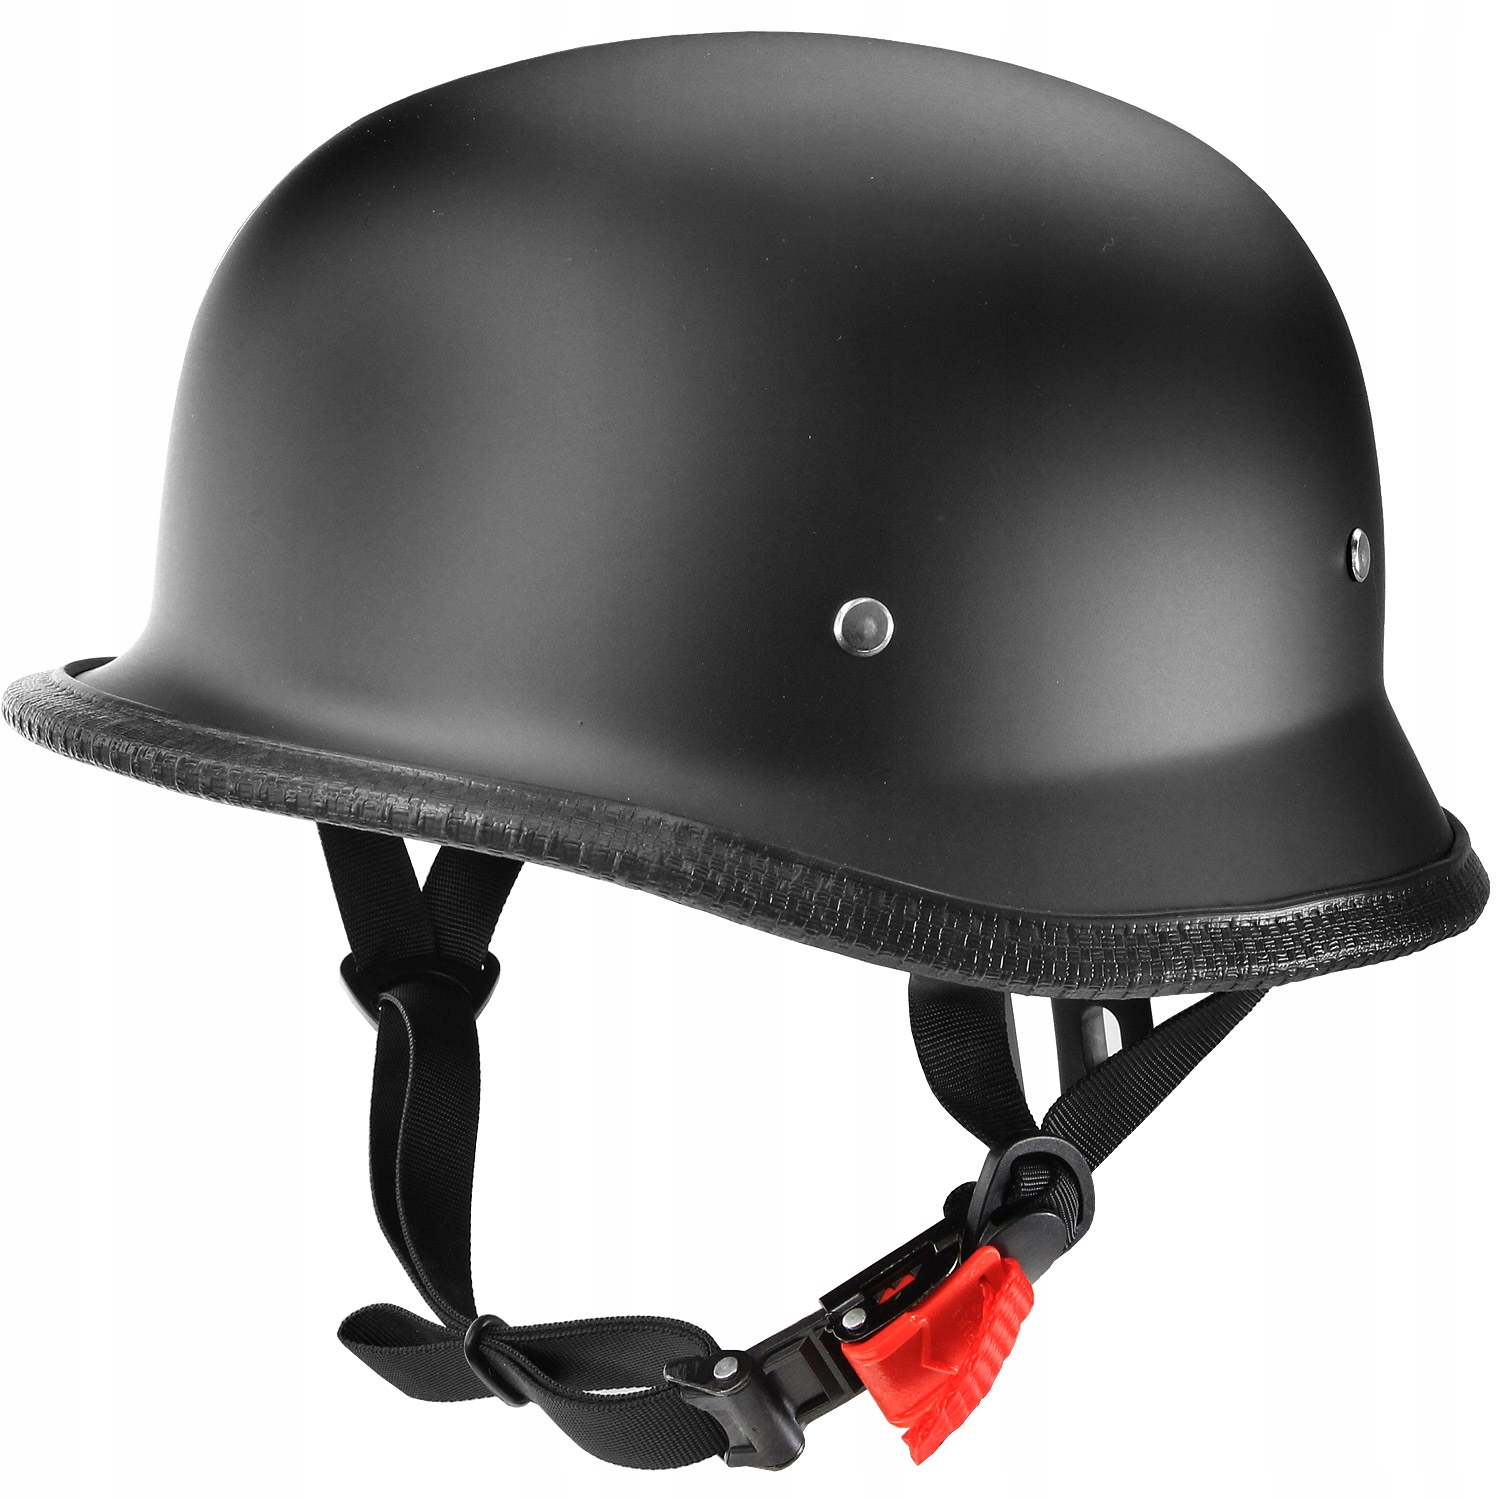 Купить шлем каску. Мотокаска немецкий шлем. Шлем-каска (Size:l, черный, матовый) "Helmet". Шлем каска pab HT 04. Шлем DFG.